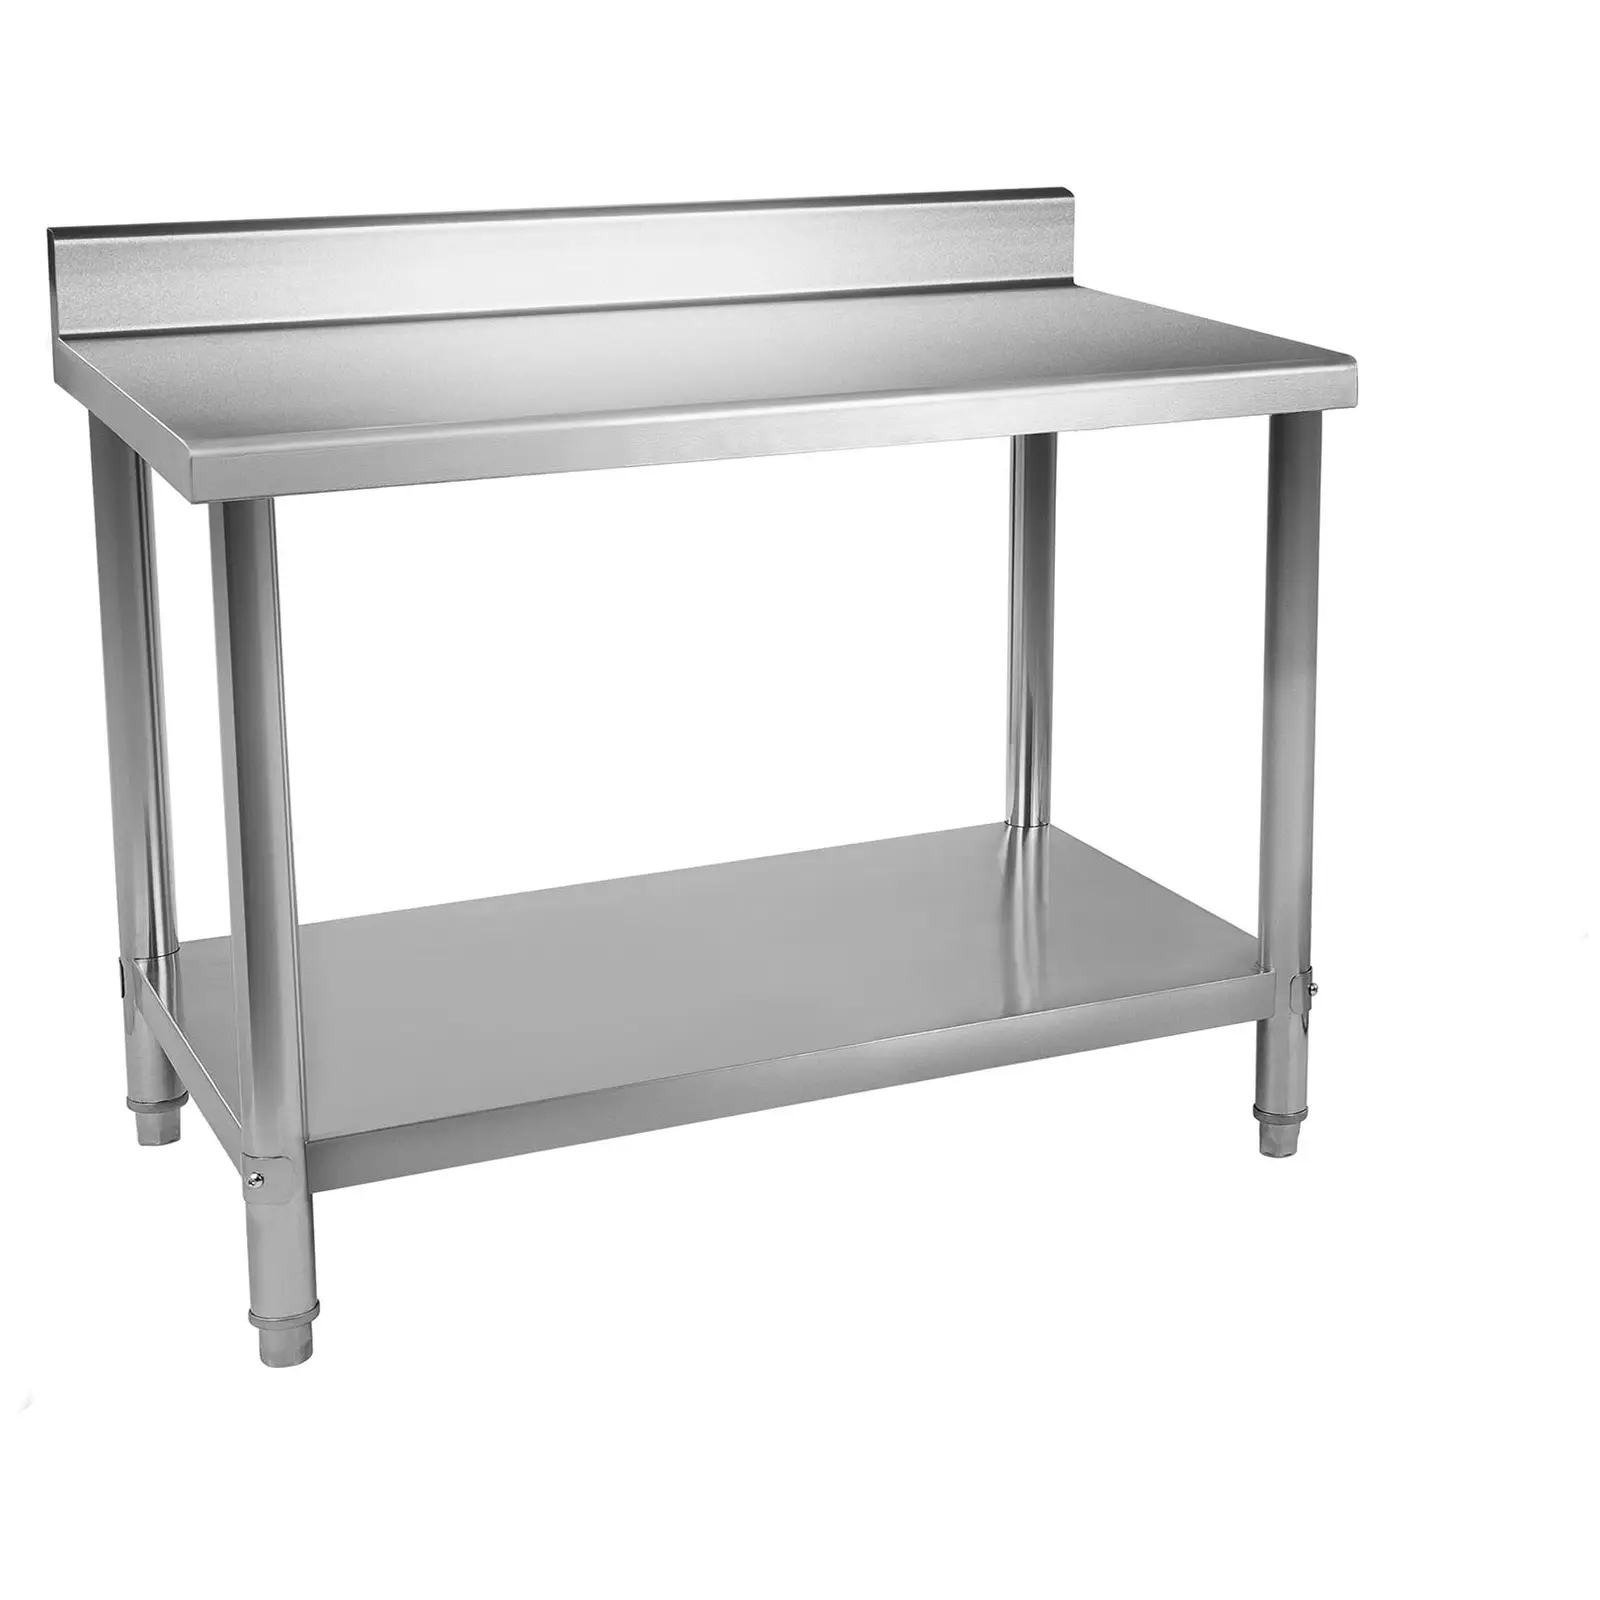 Table de travail inox - 150 x 60 cm - Avec dosseret - Capacité de charge de 159 kg